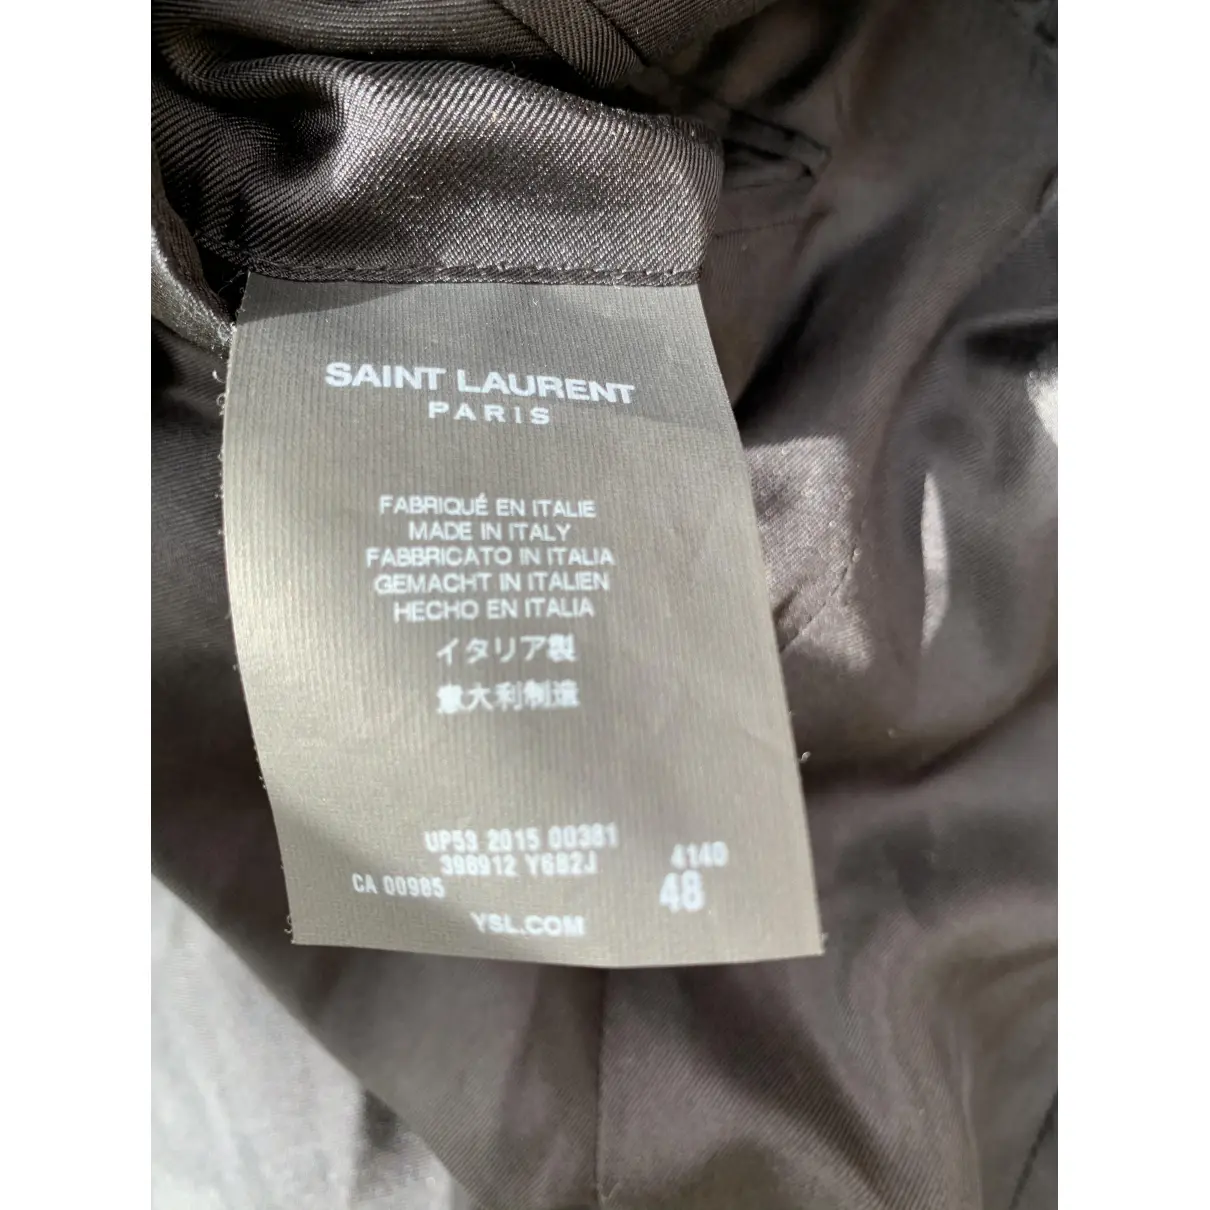 Wool suit Saint Laurent